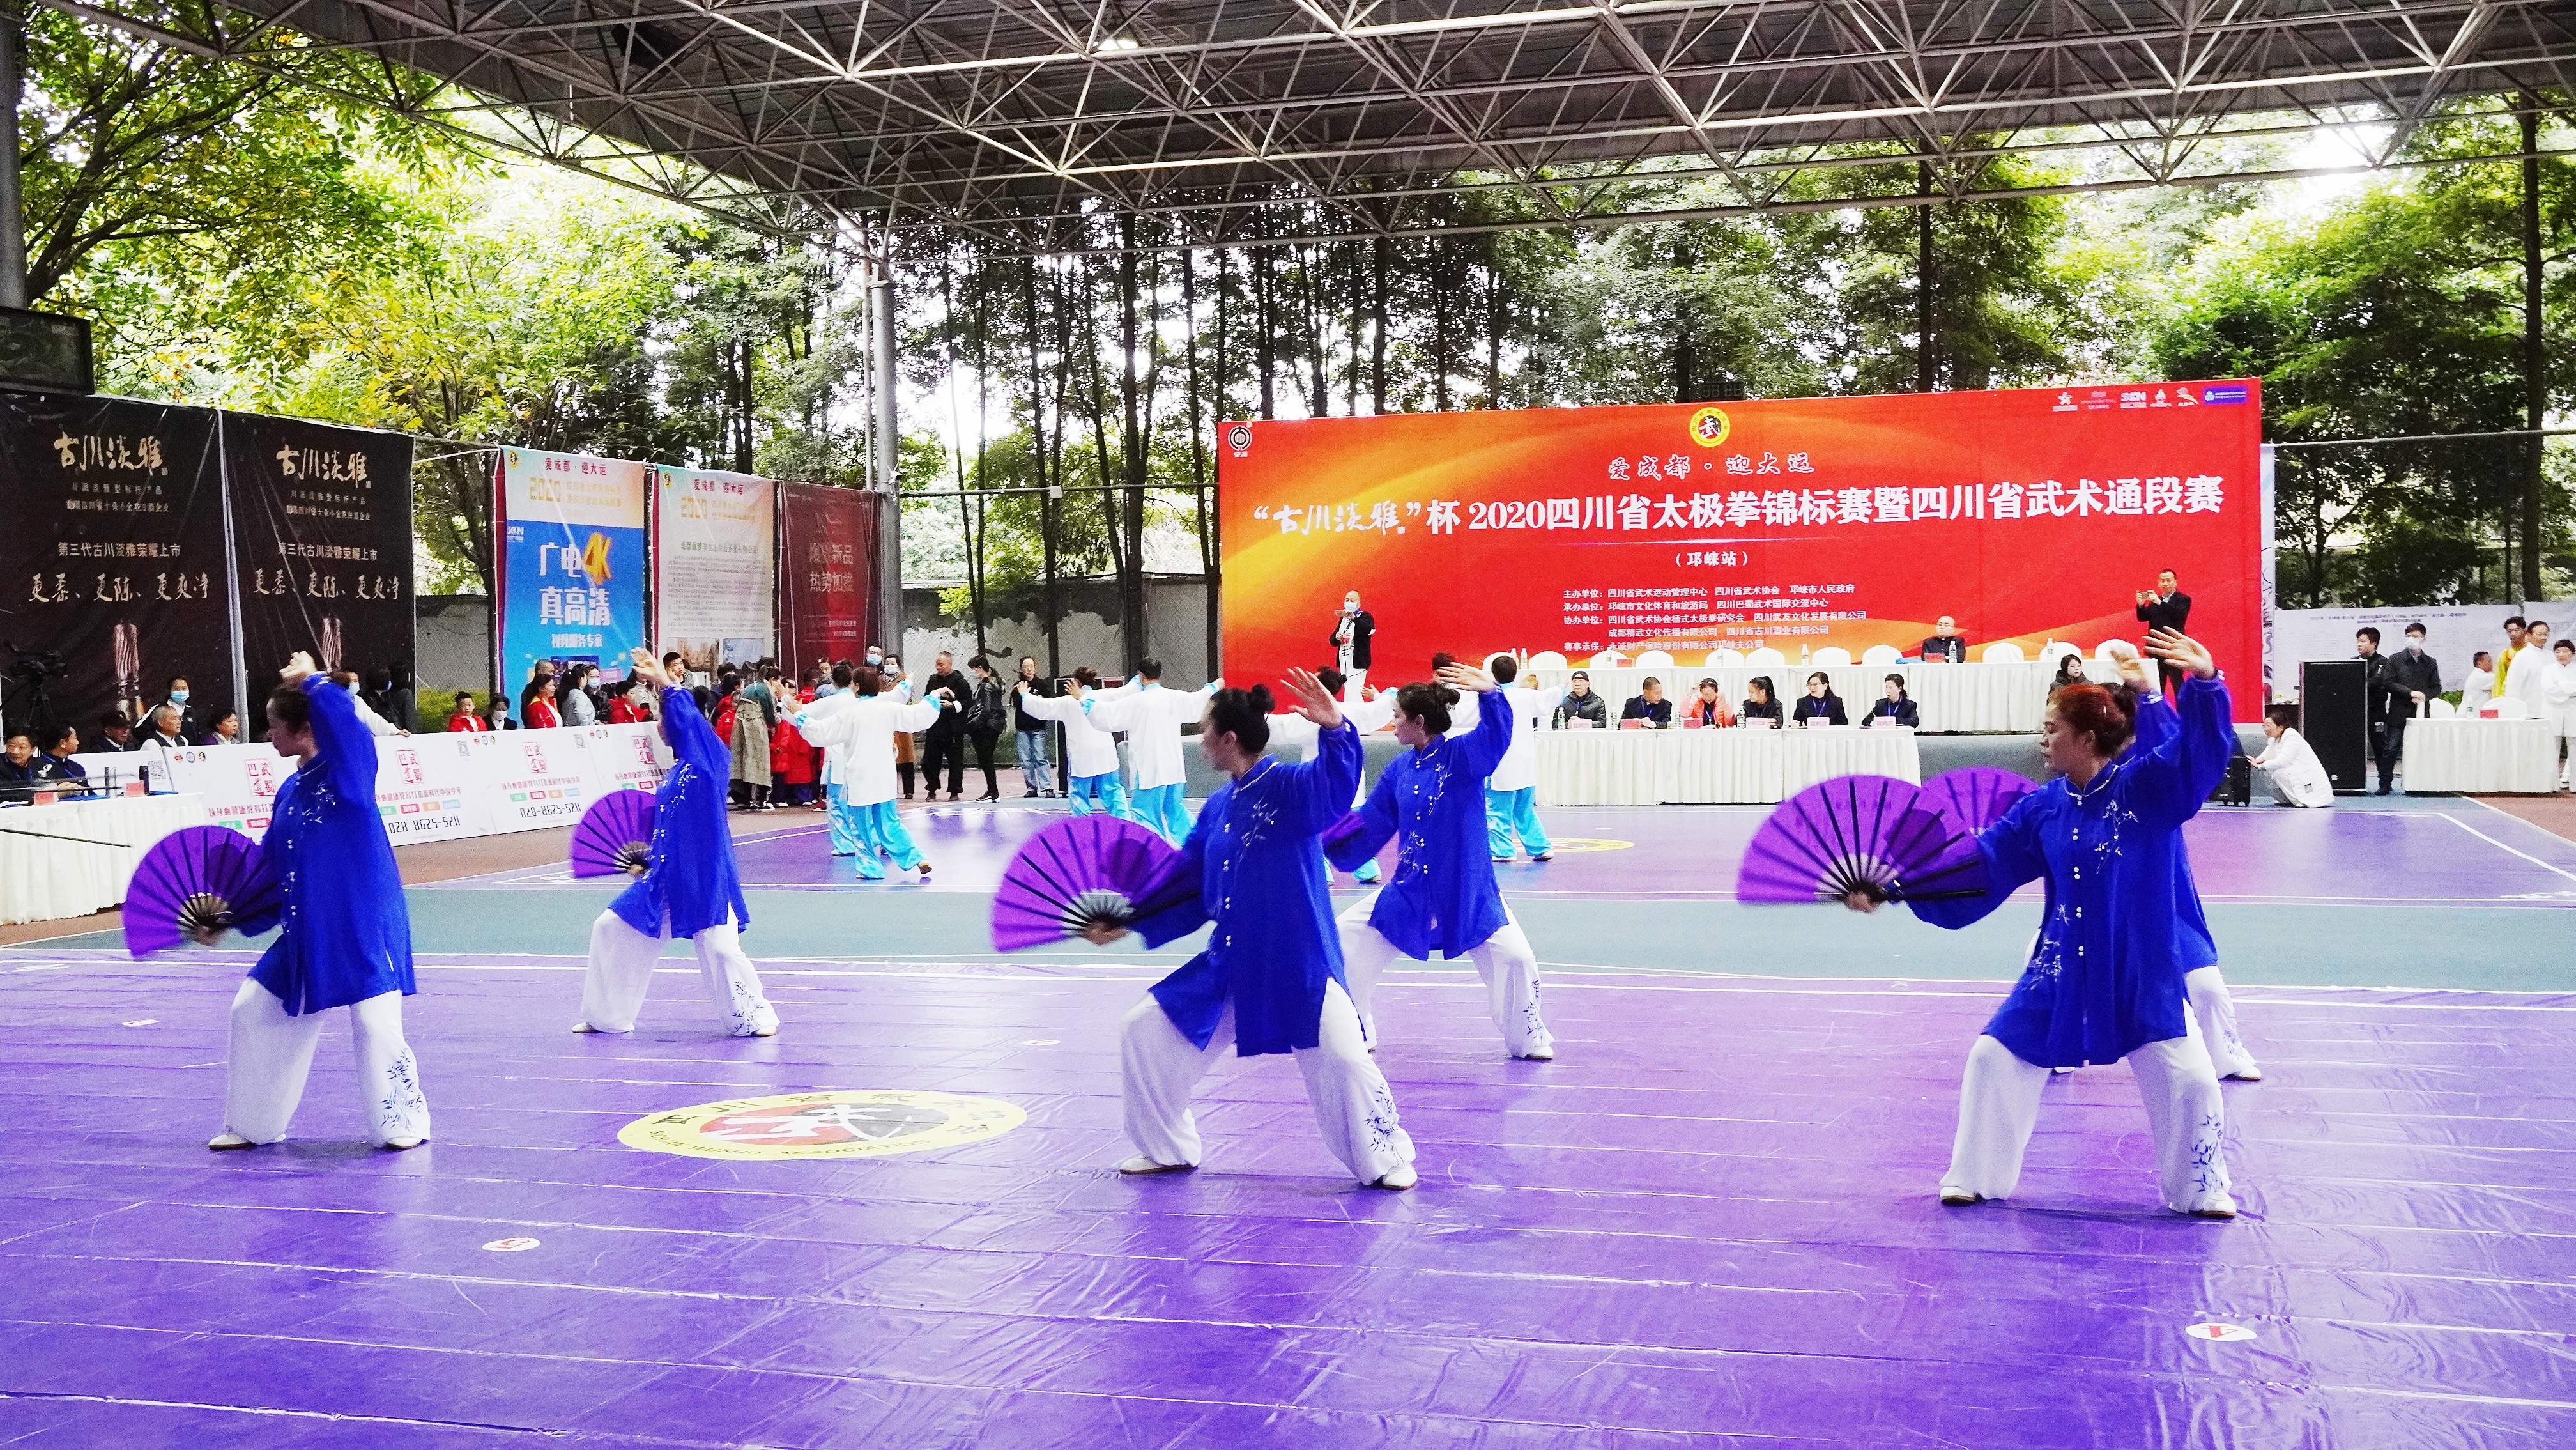 2020四川省太极拳锦标赛暨四川省武术通段赛顺利举行